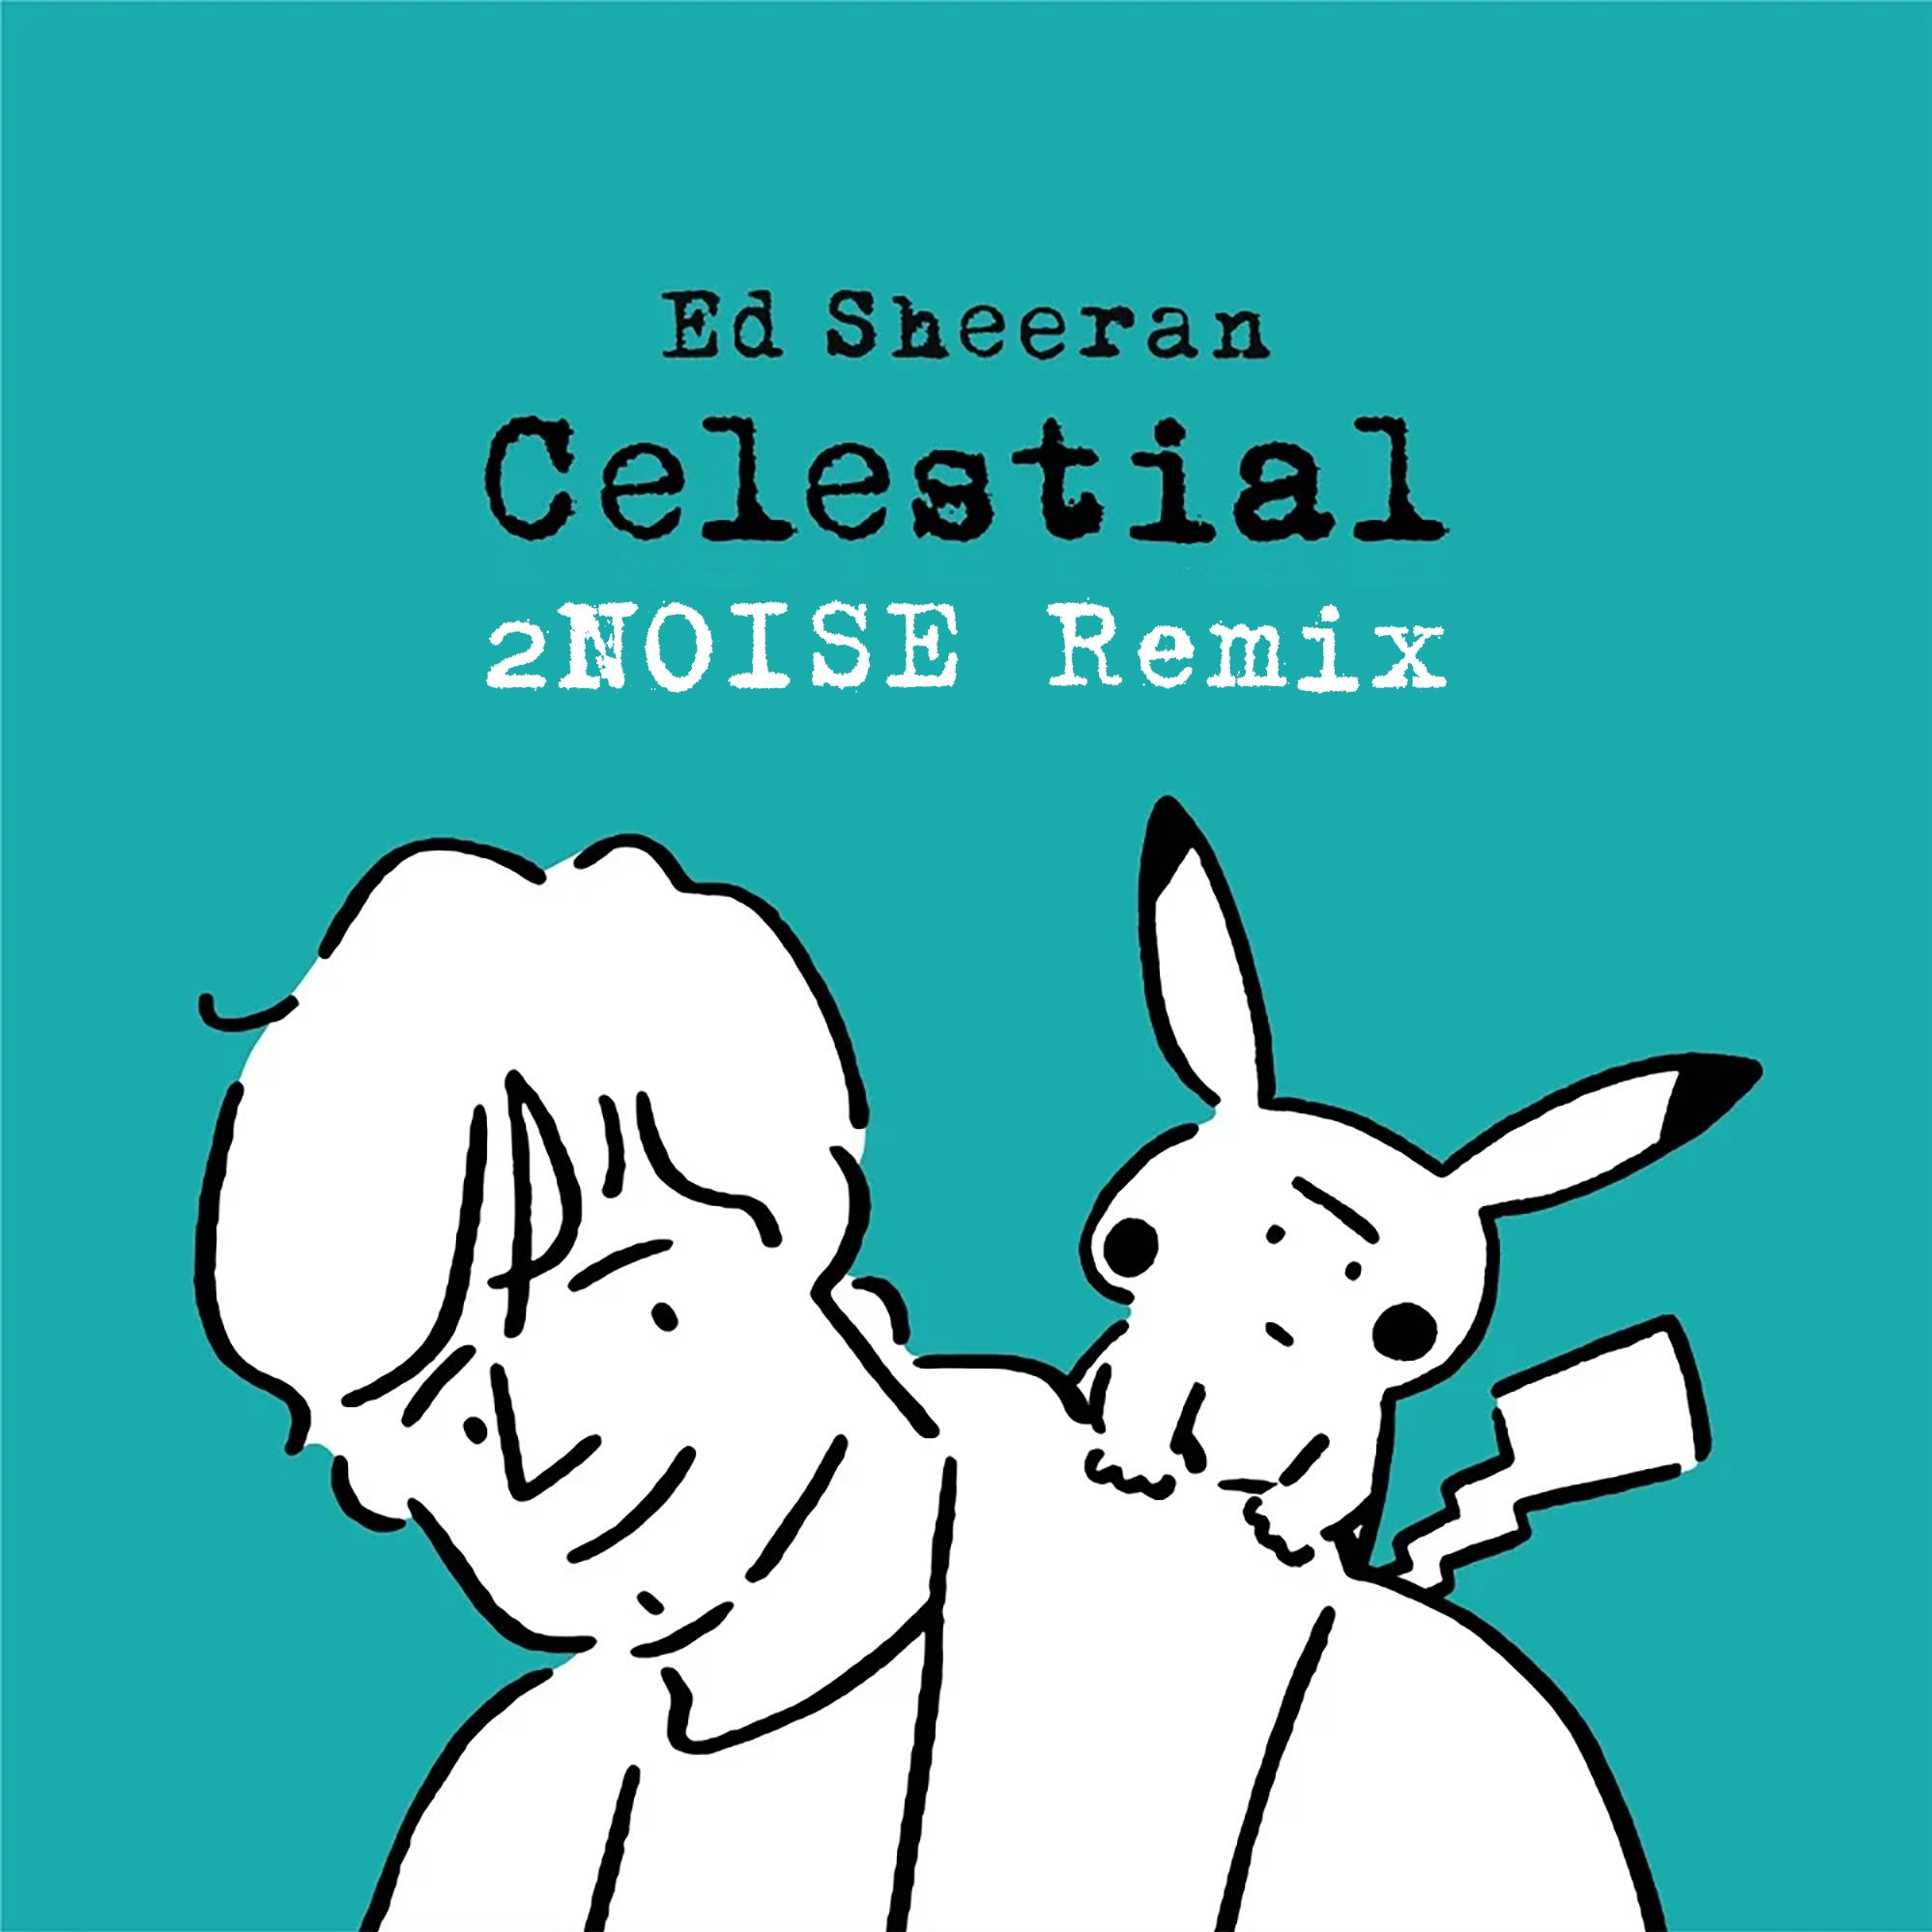 ဒေါင်းလုပ် Ed Sheeran - Celestial (2NOISE Remix) [Progressive]